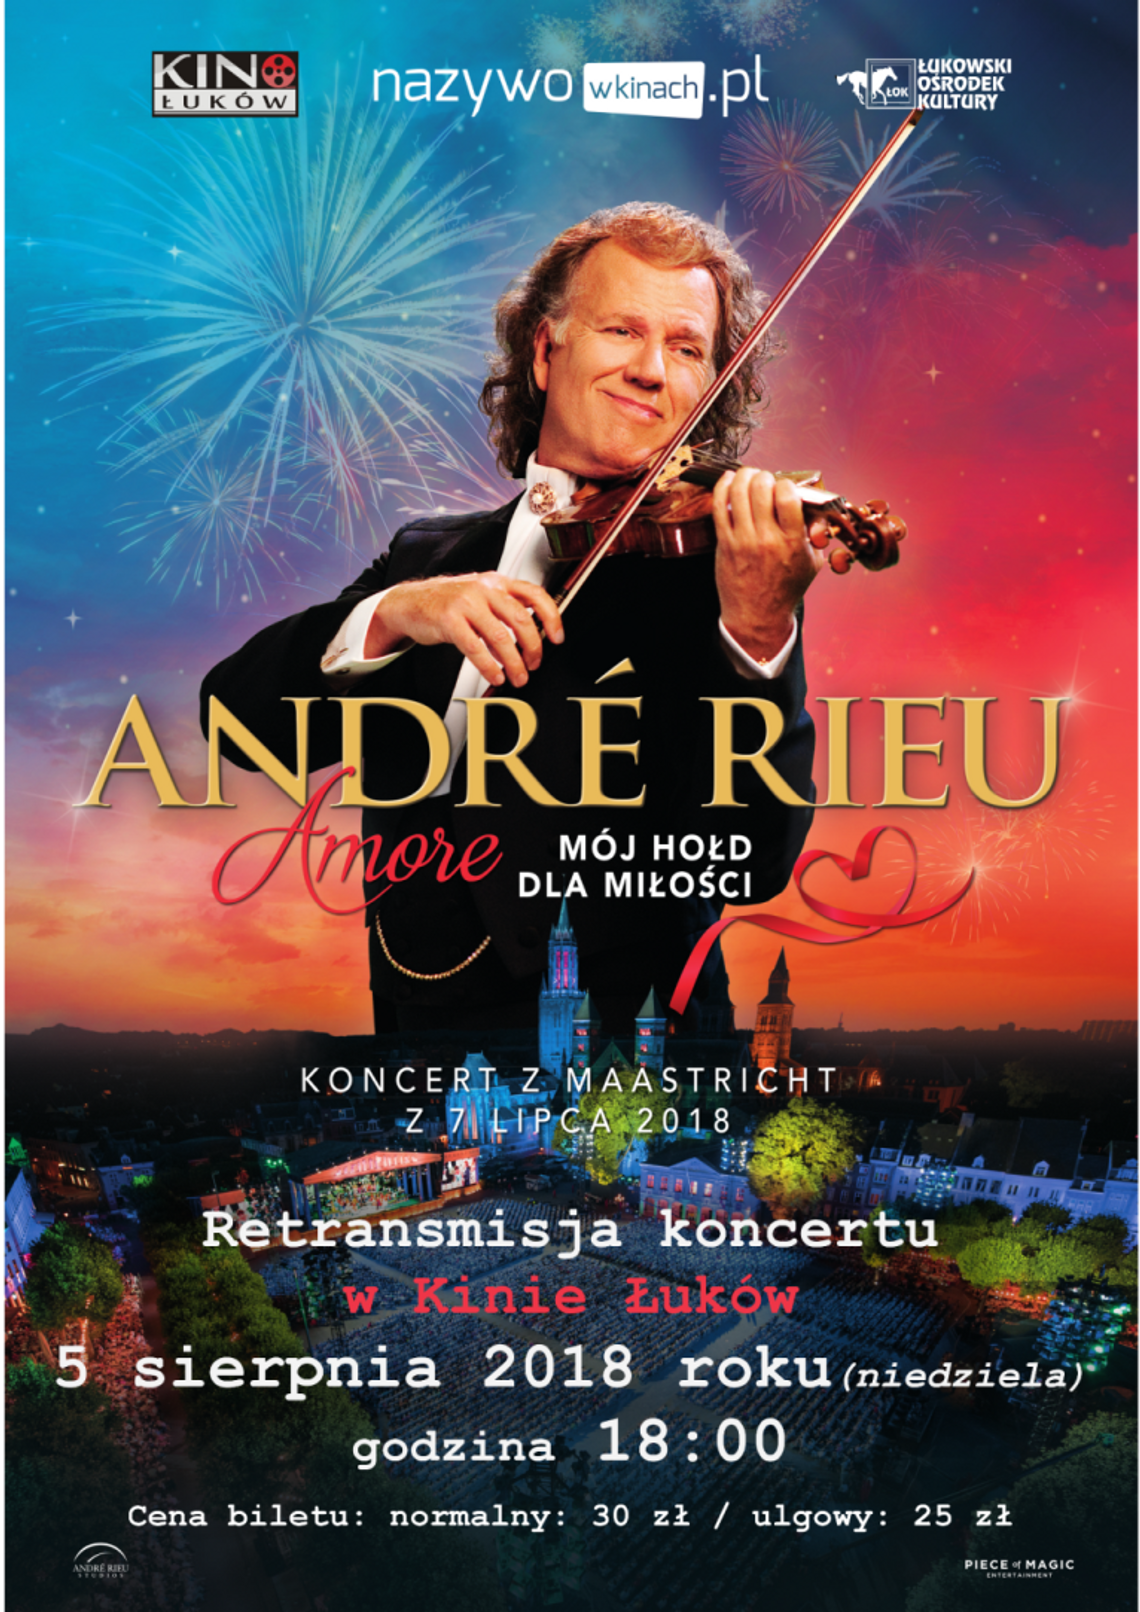 Retransmisja koncertu „Amore- mój hołd dla miłości” w wykonaniu André Rieu w Kinie Łuków// 5 sierpnia 2018